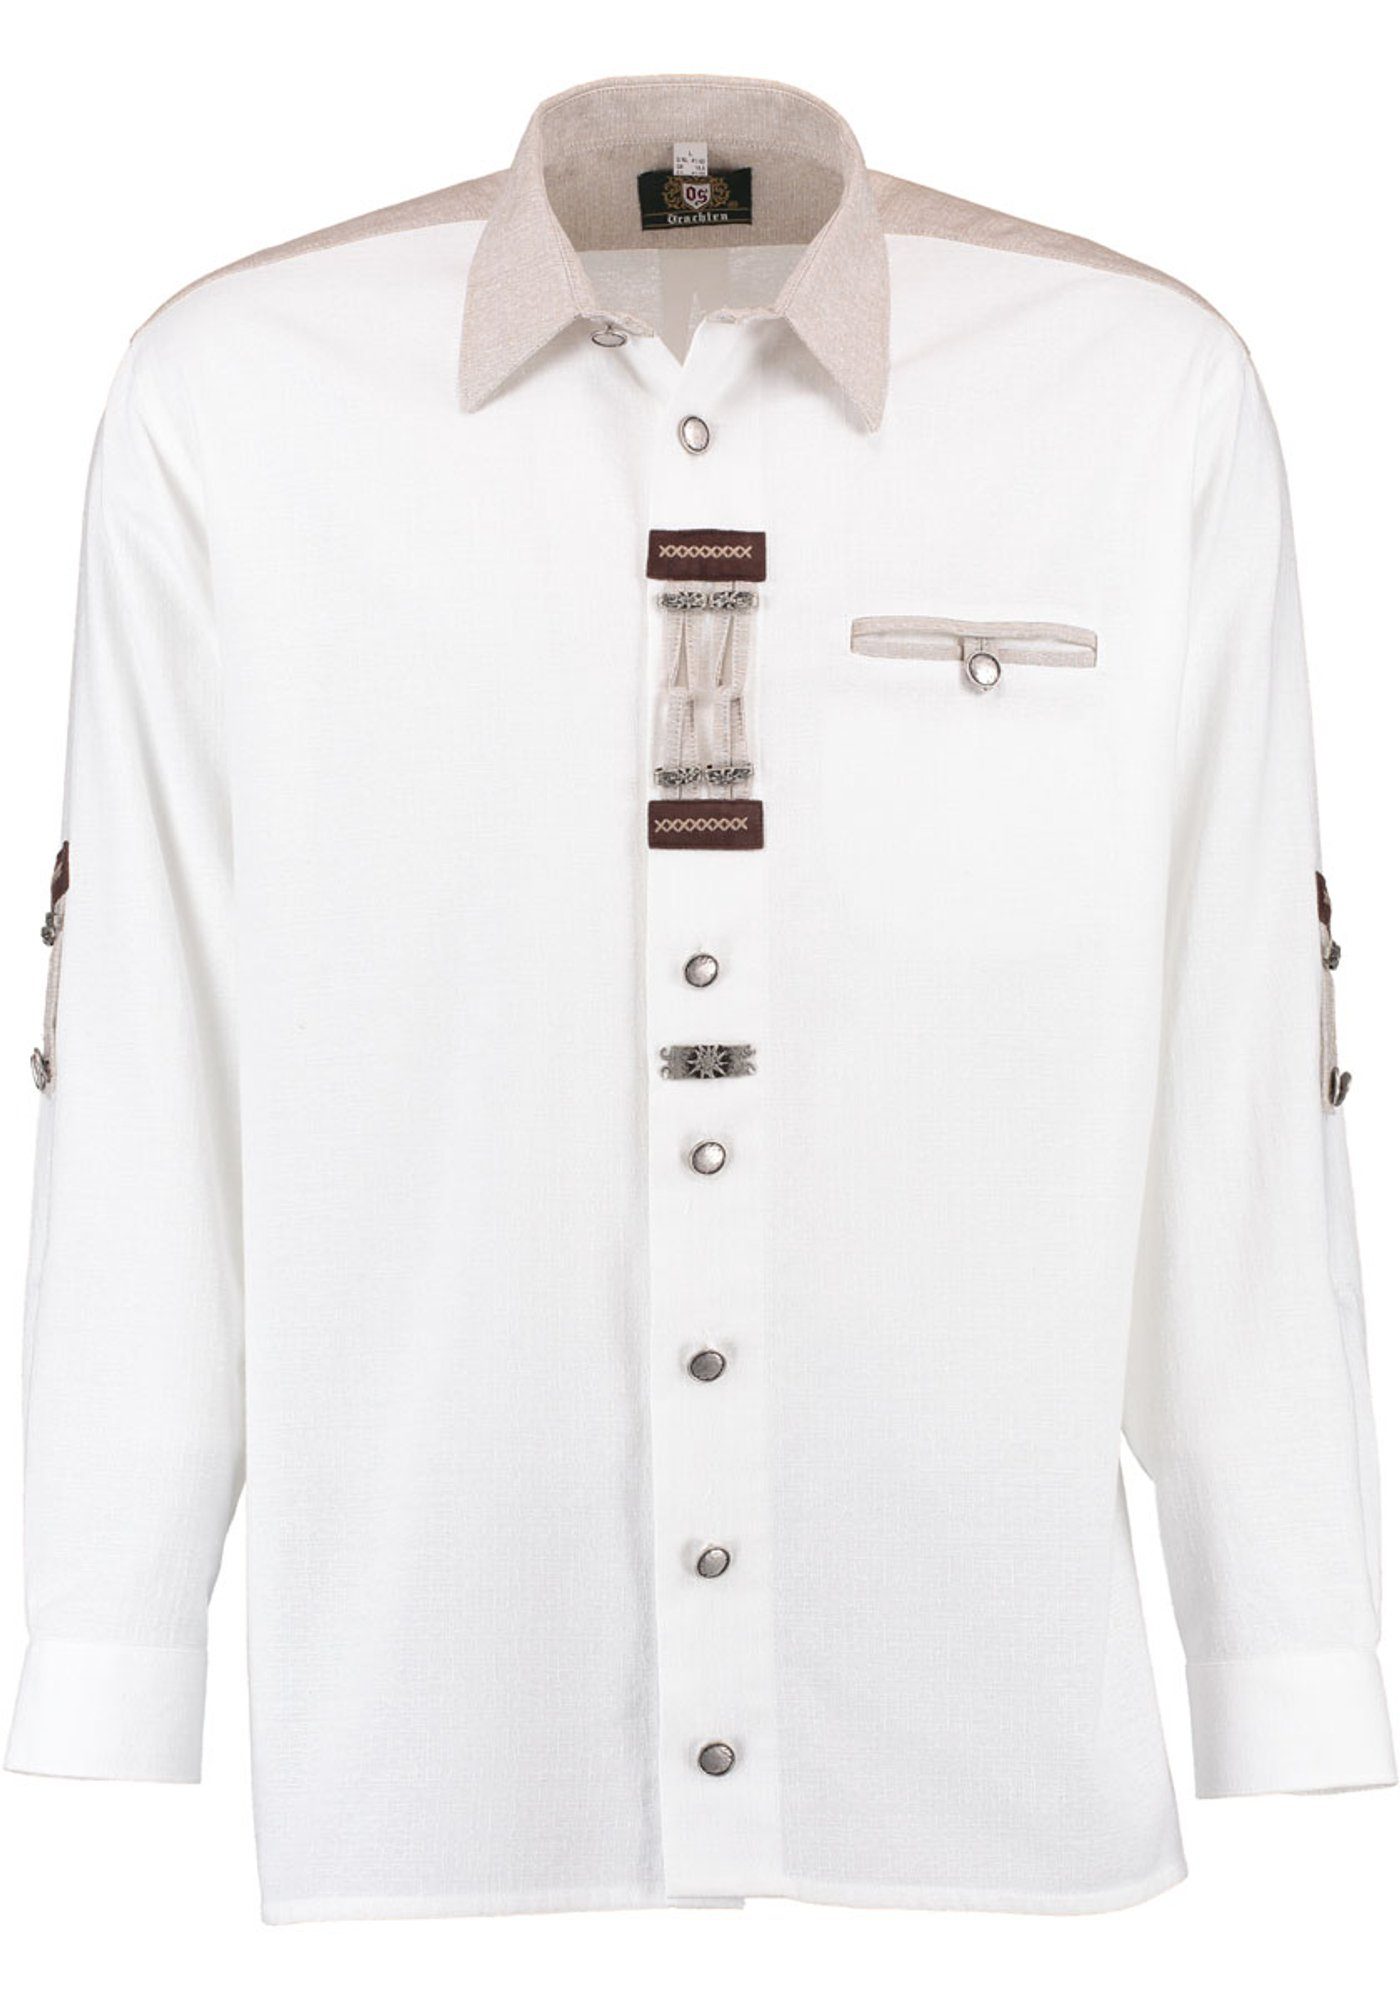 OS-Trachten Trachtenhemd Nevai Langarmhemd mit Paspeltasche, Zierteile auf der Knopfleiste weiß